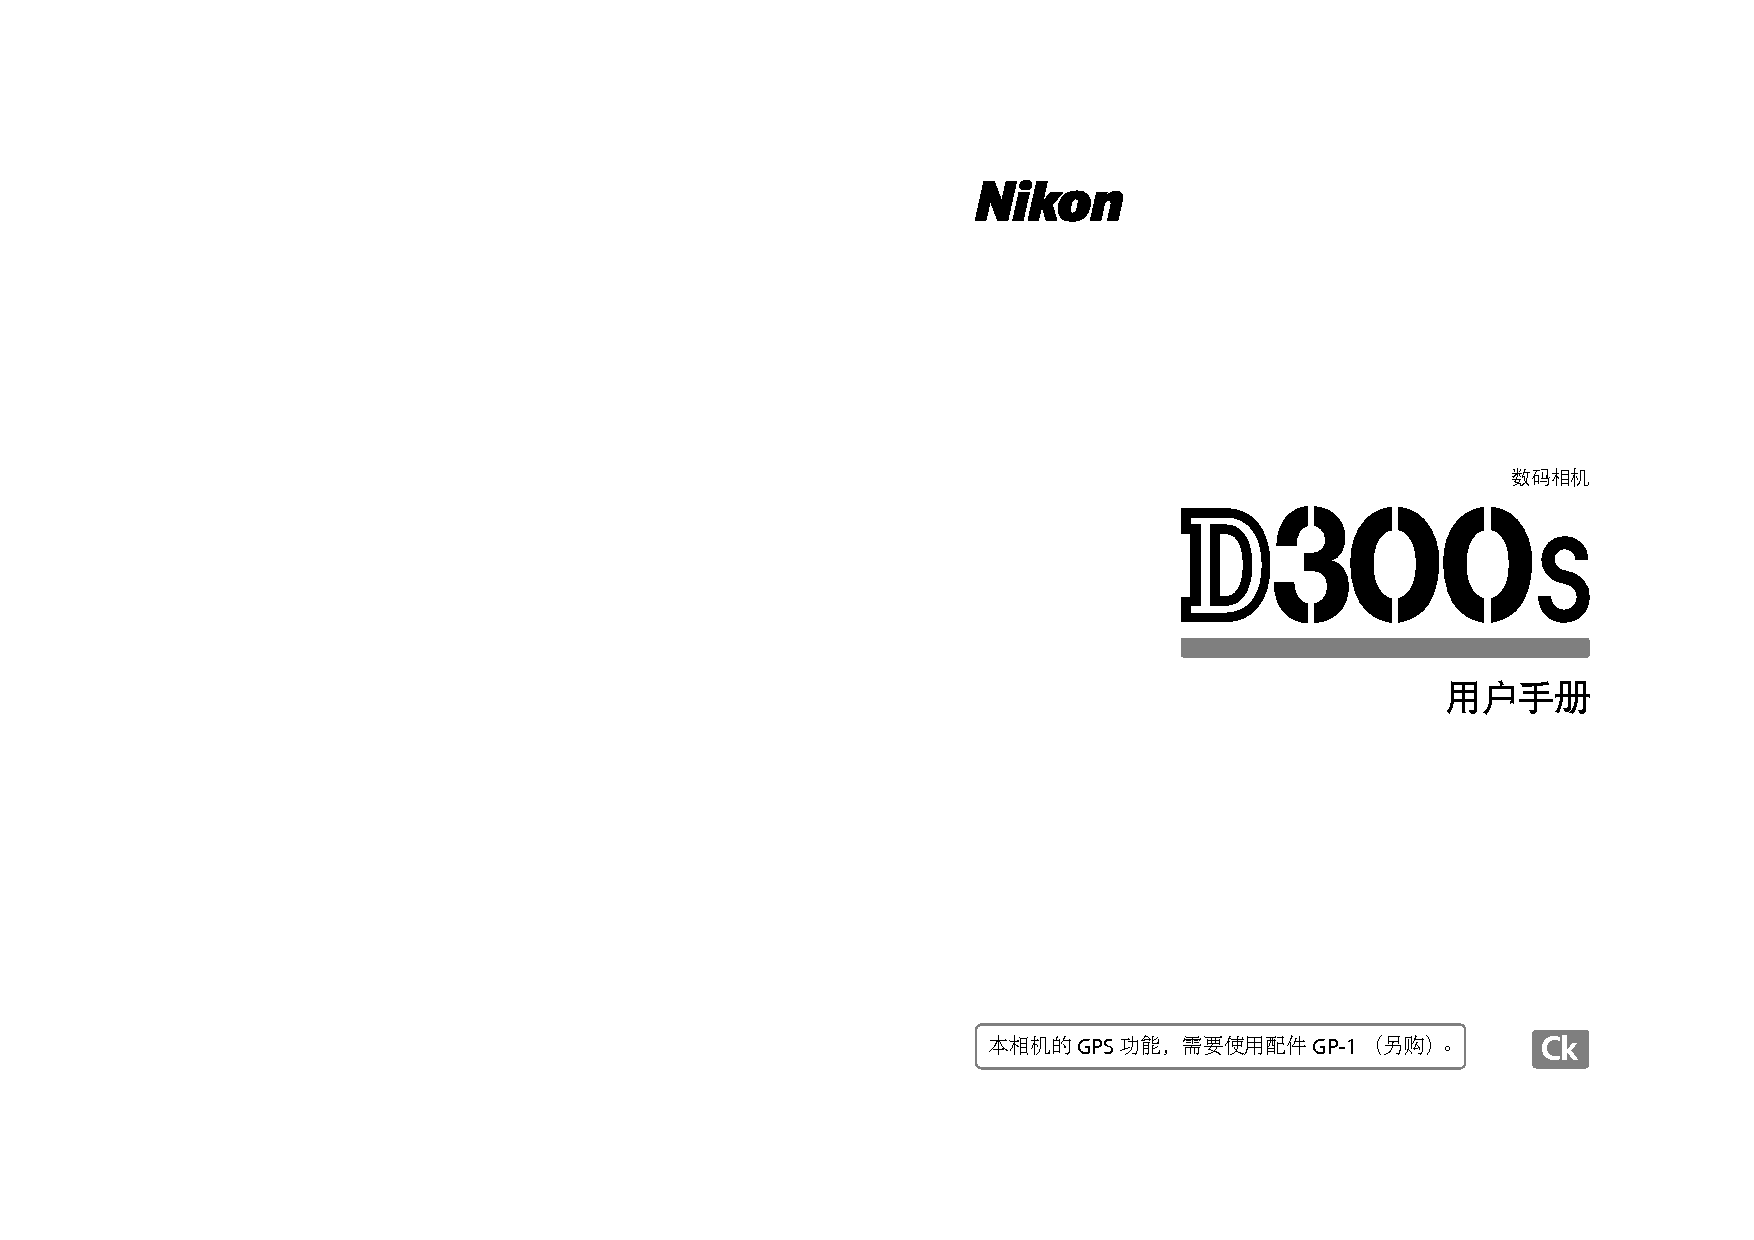 尼康 Nikon D300S 使用说明书 封面